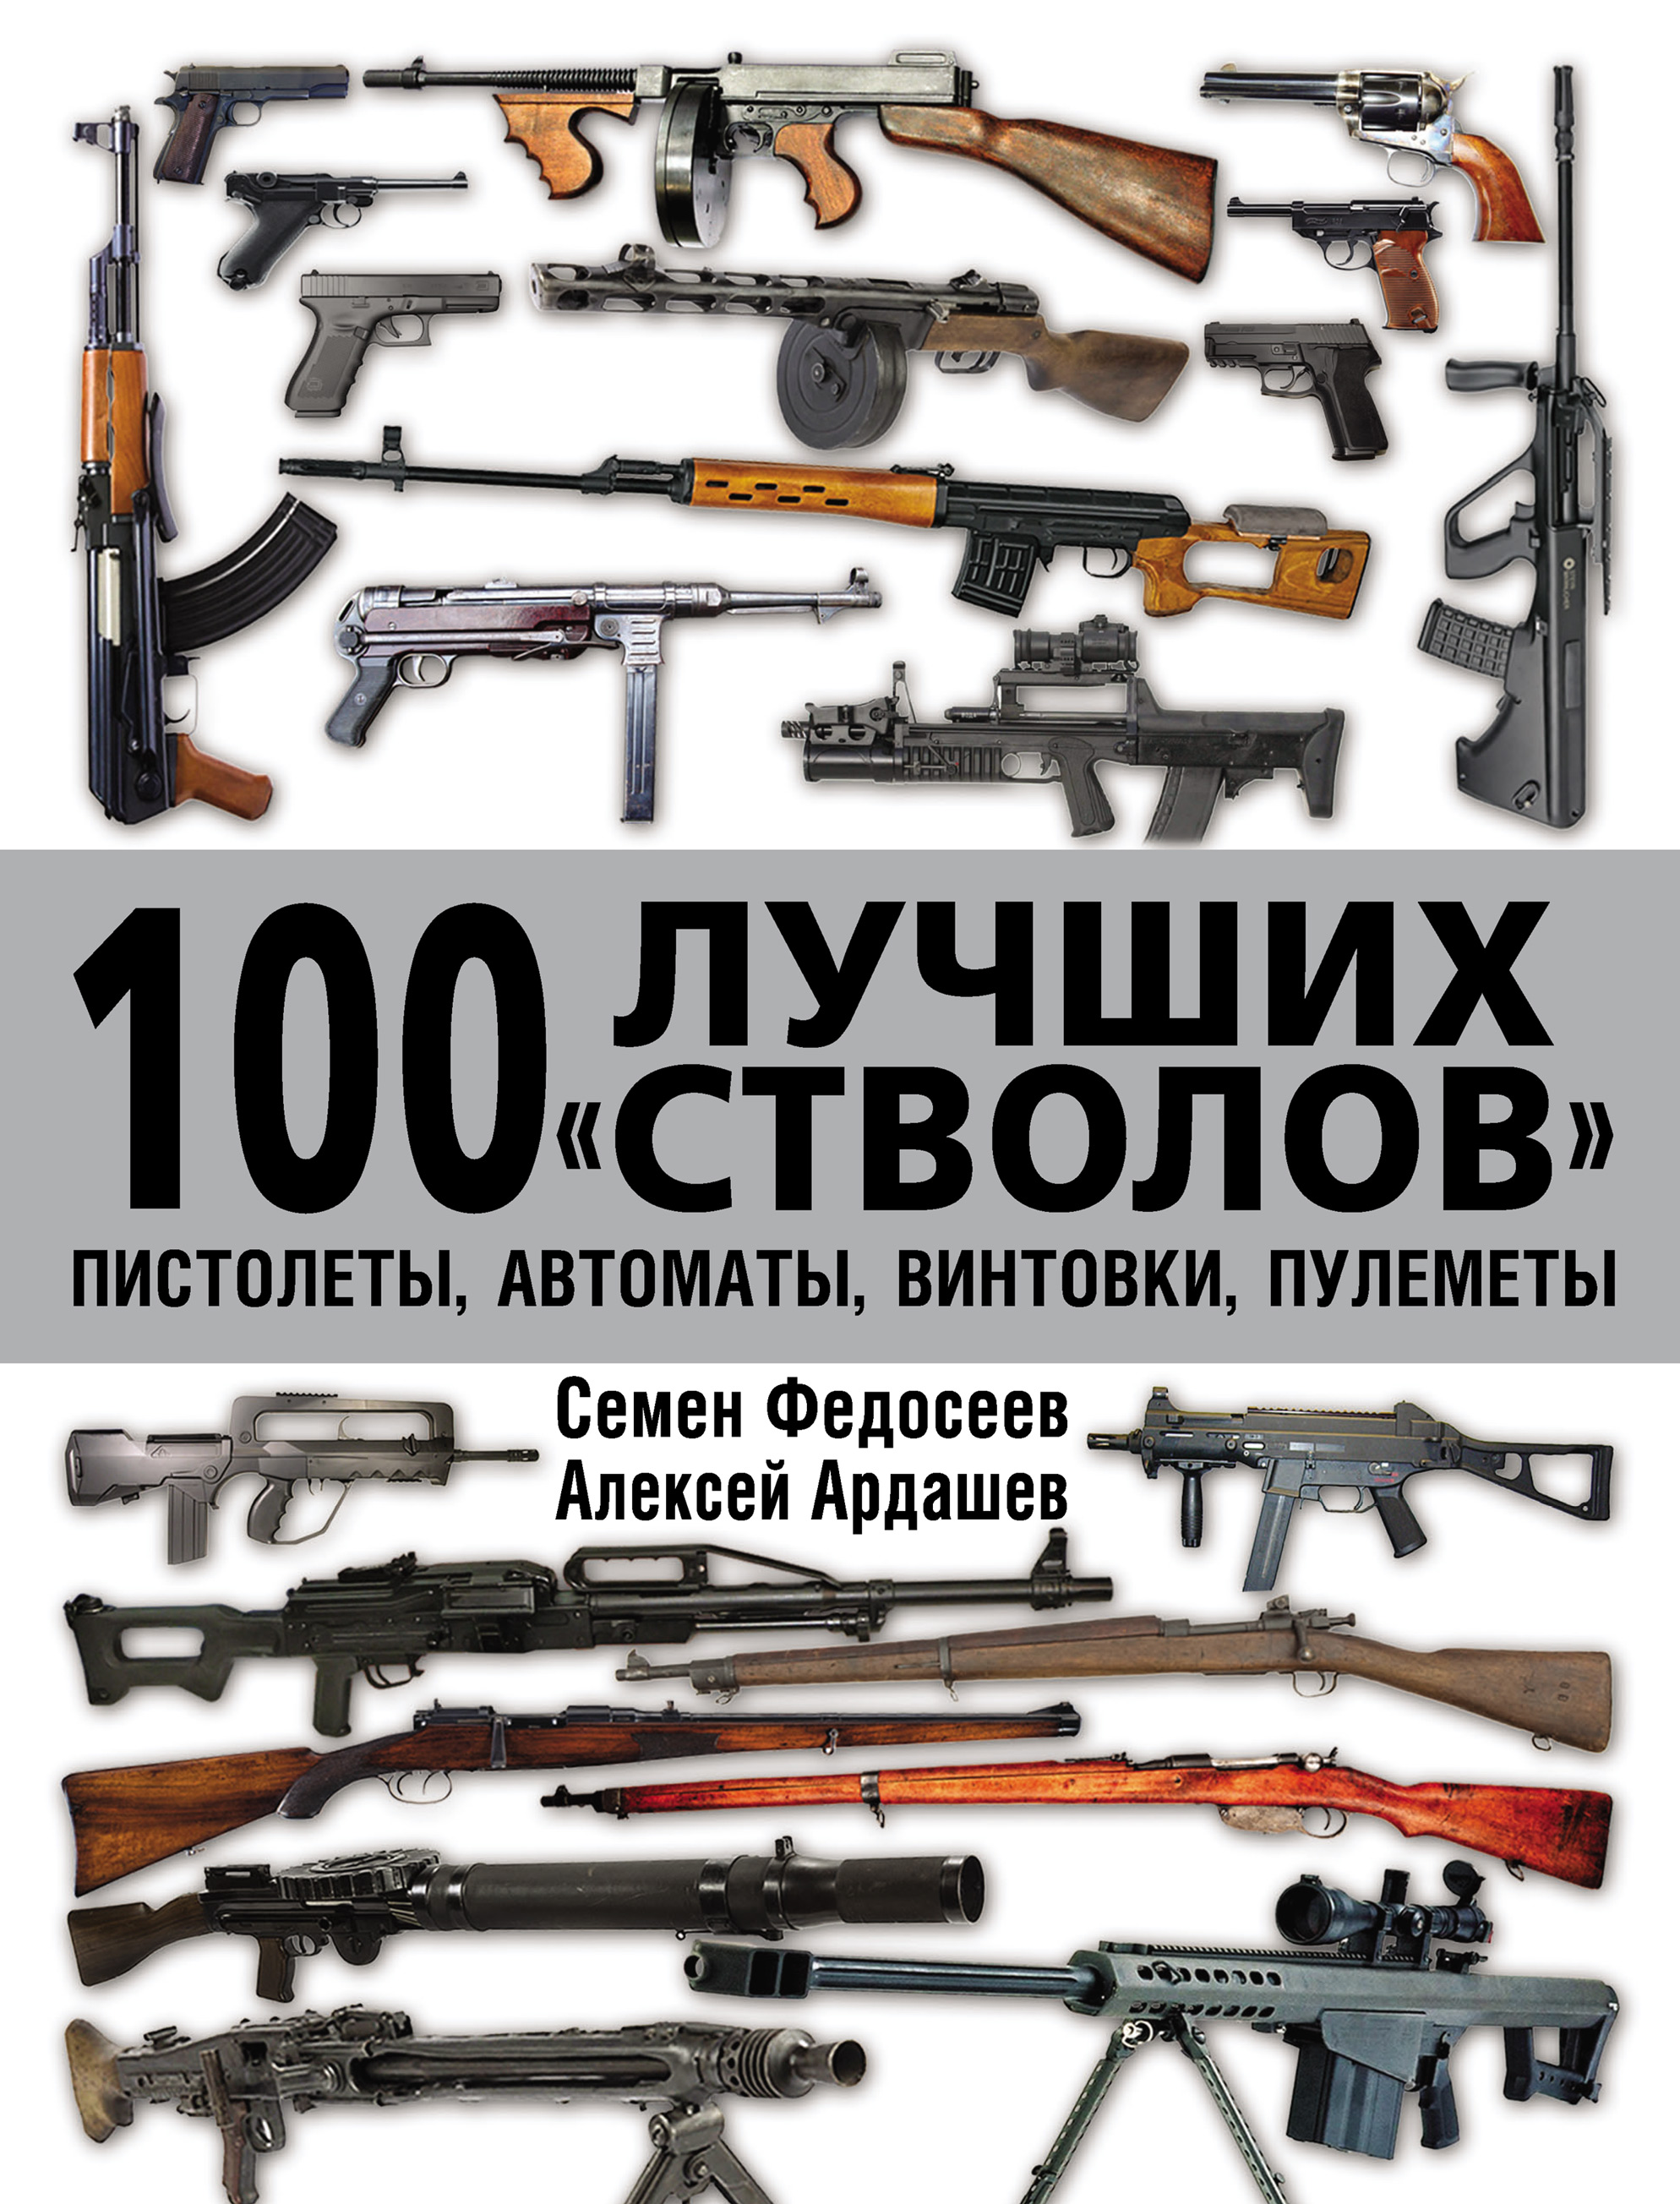 100лучших «стволов»: пистолеты, автоматы, винтовки, пулеметы